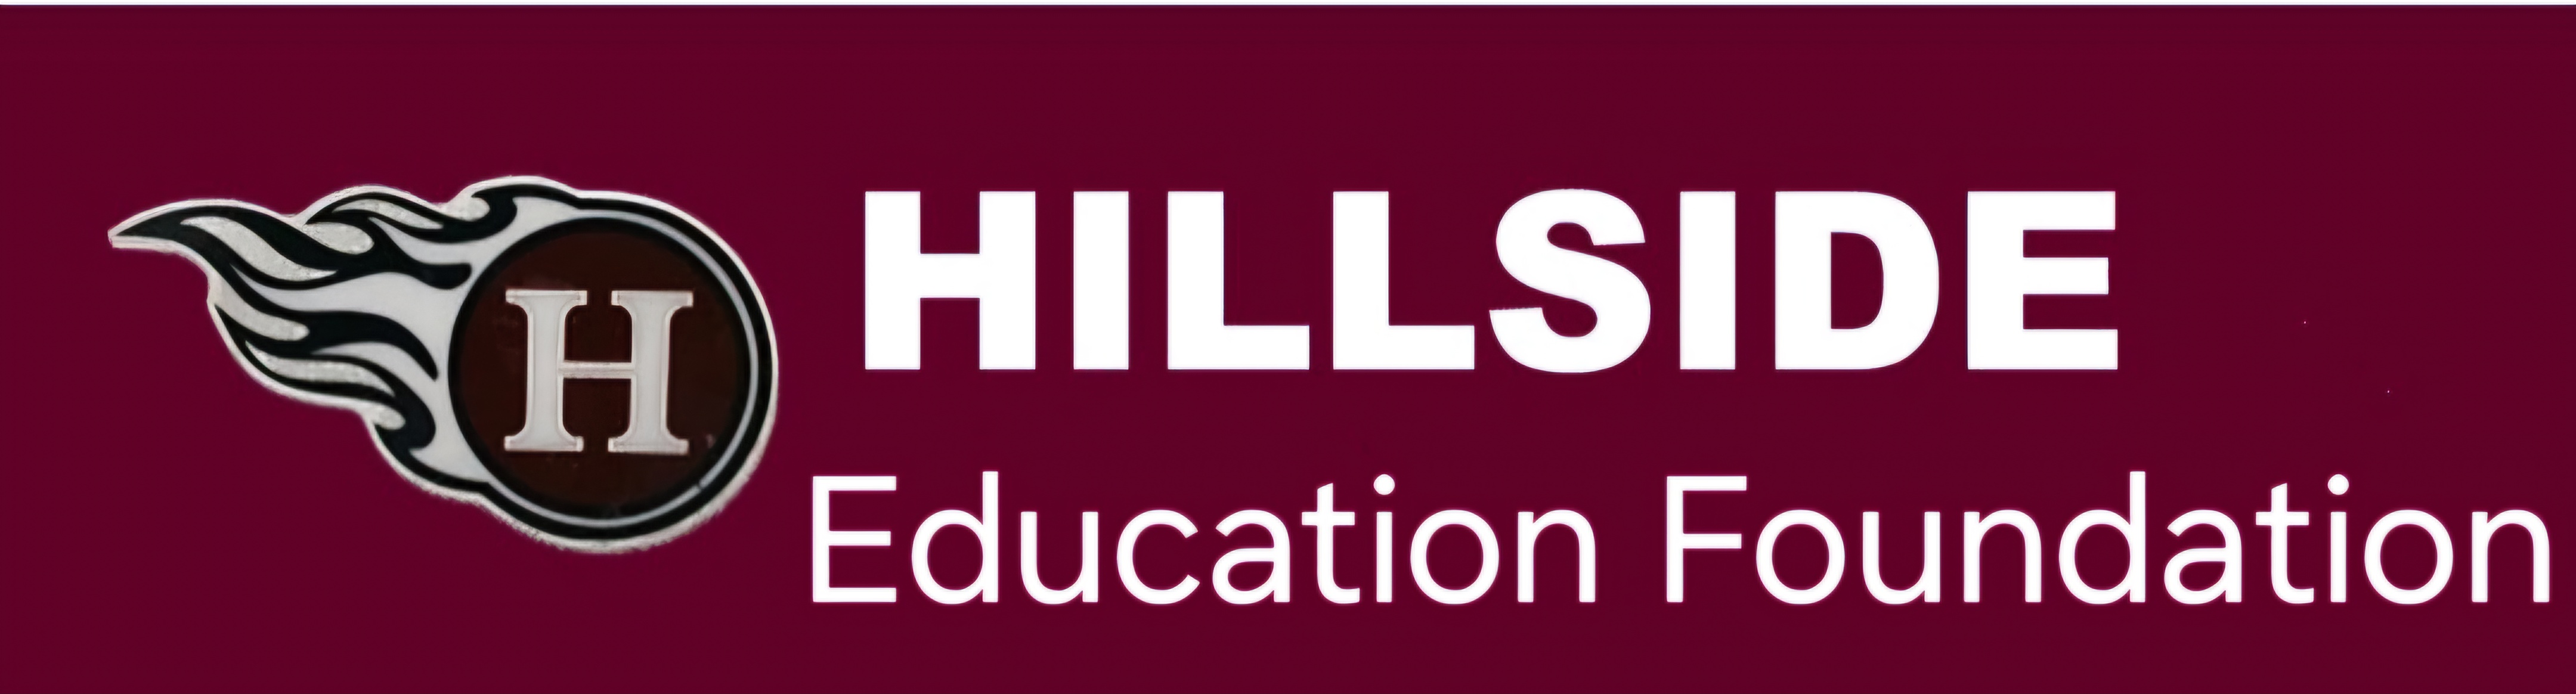 Hillside Education Foundation